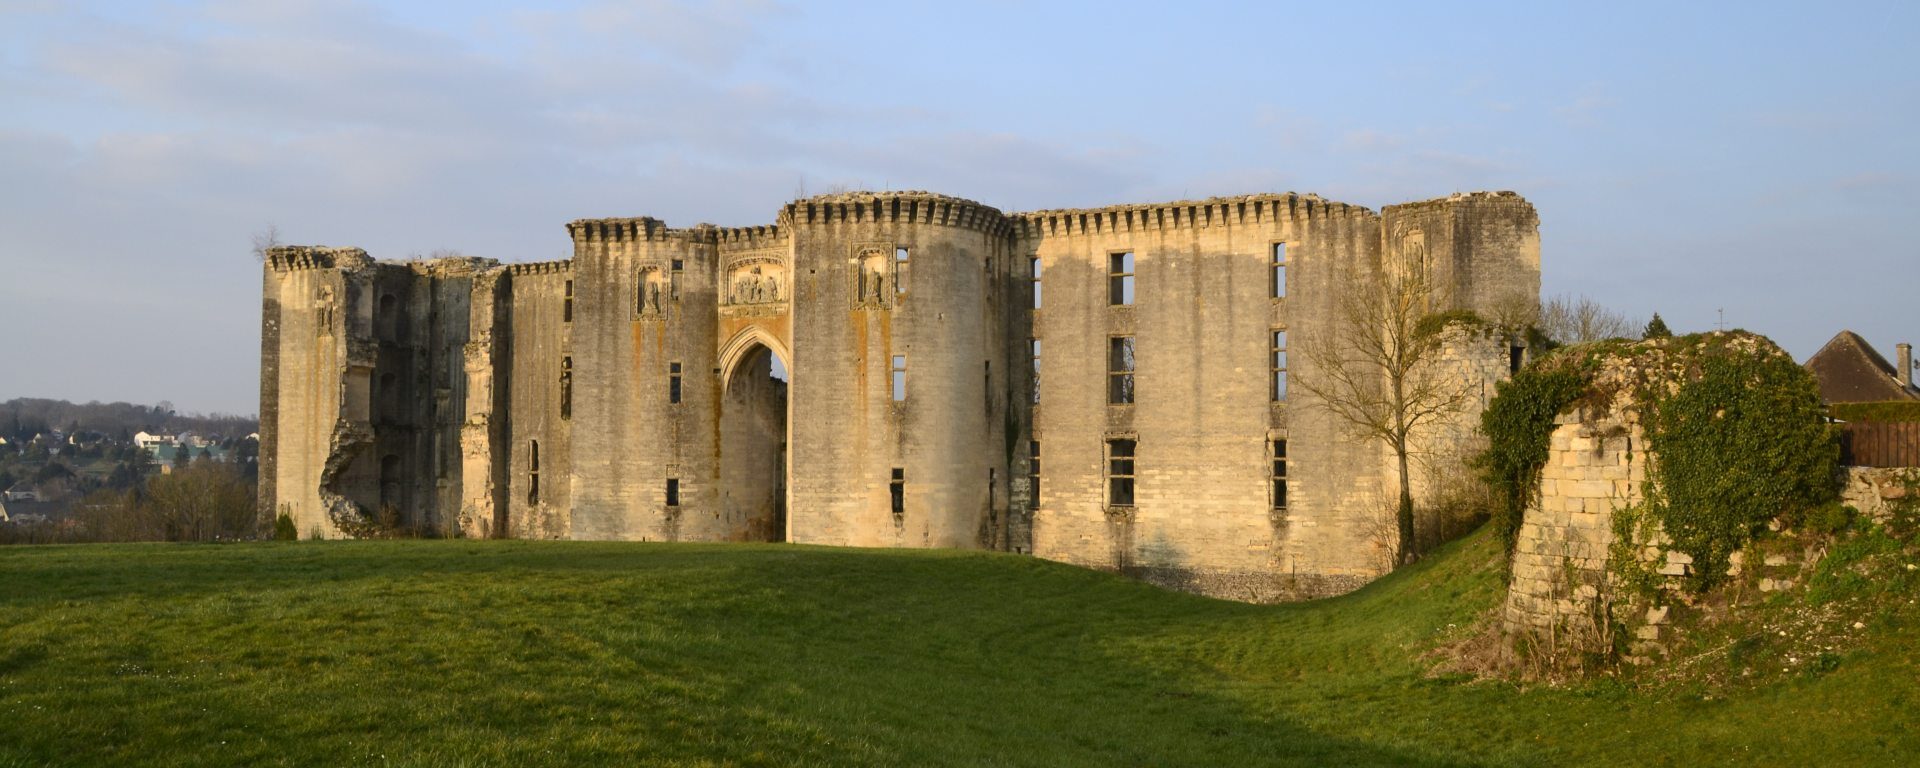 Château inachevé de La Ferté-Milon